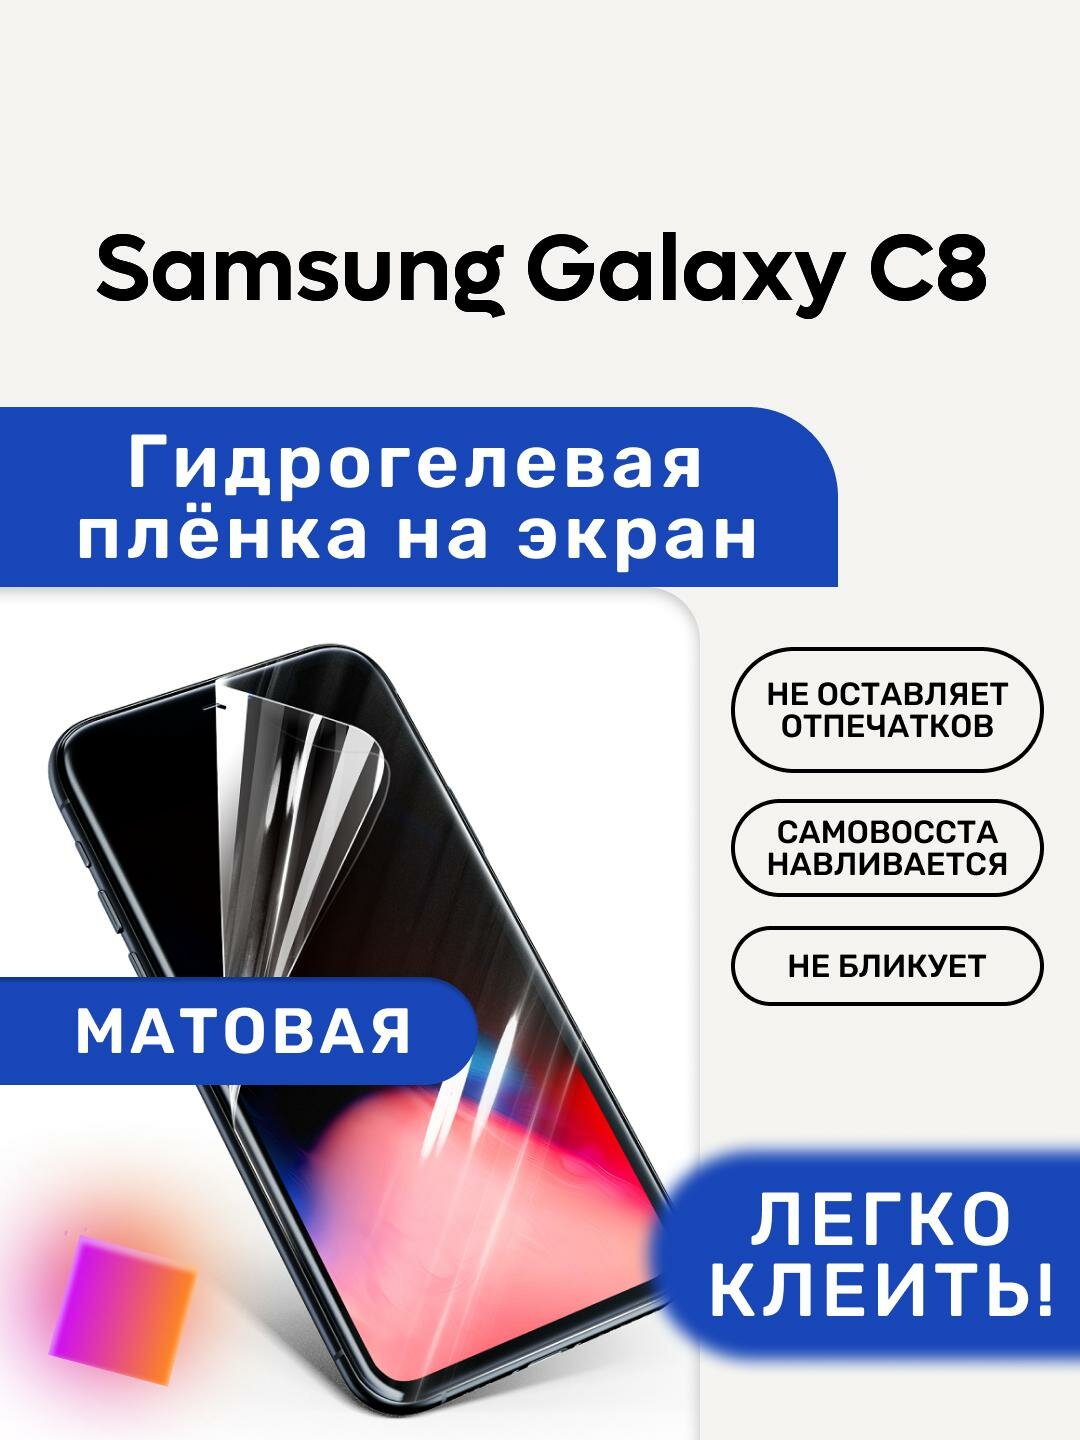 Матовая Гидрогелевая плёнка, полиуретановая, защита экрана Samsung Galaxy C8